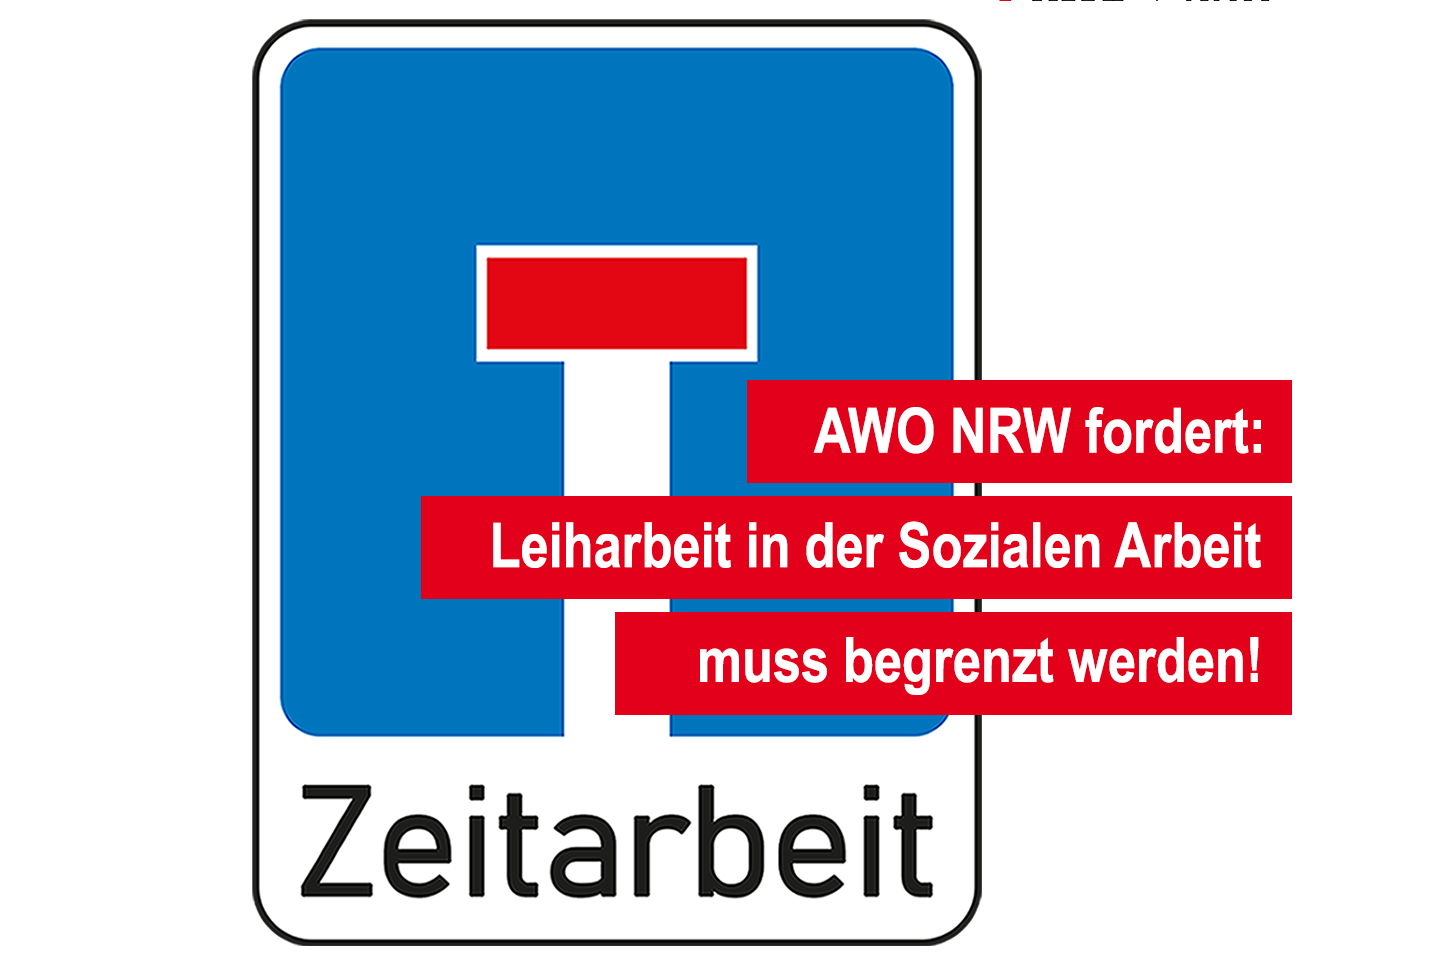 Das Foto zeigt ein Einbahnstraßenschild. Darunter steht Leiharbeit sowie AWO NRW fordert: Leiharbeit in der Sozialen Arbeit muss begrenzt werden!